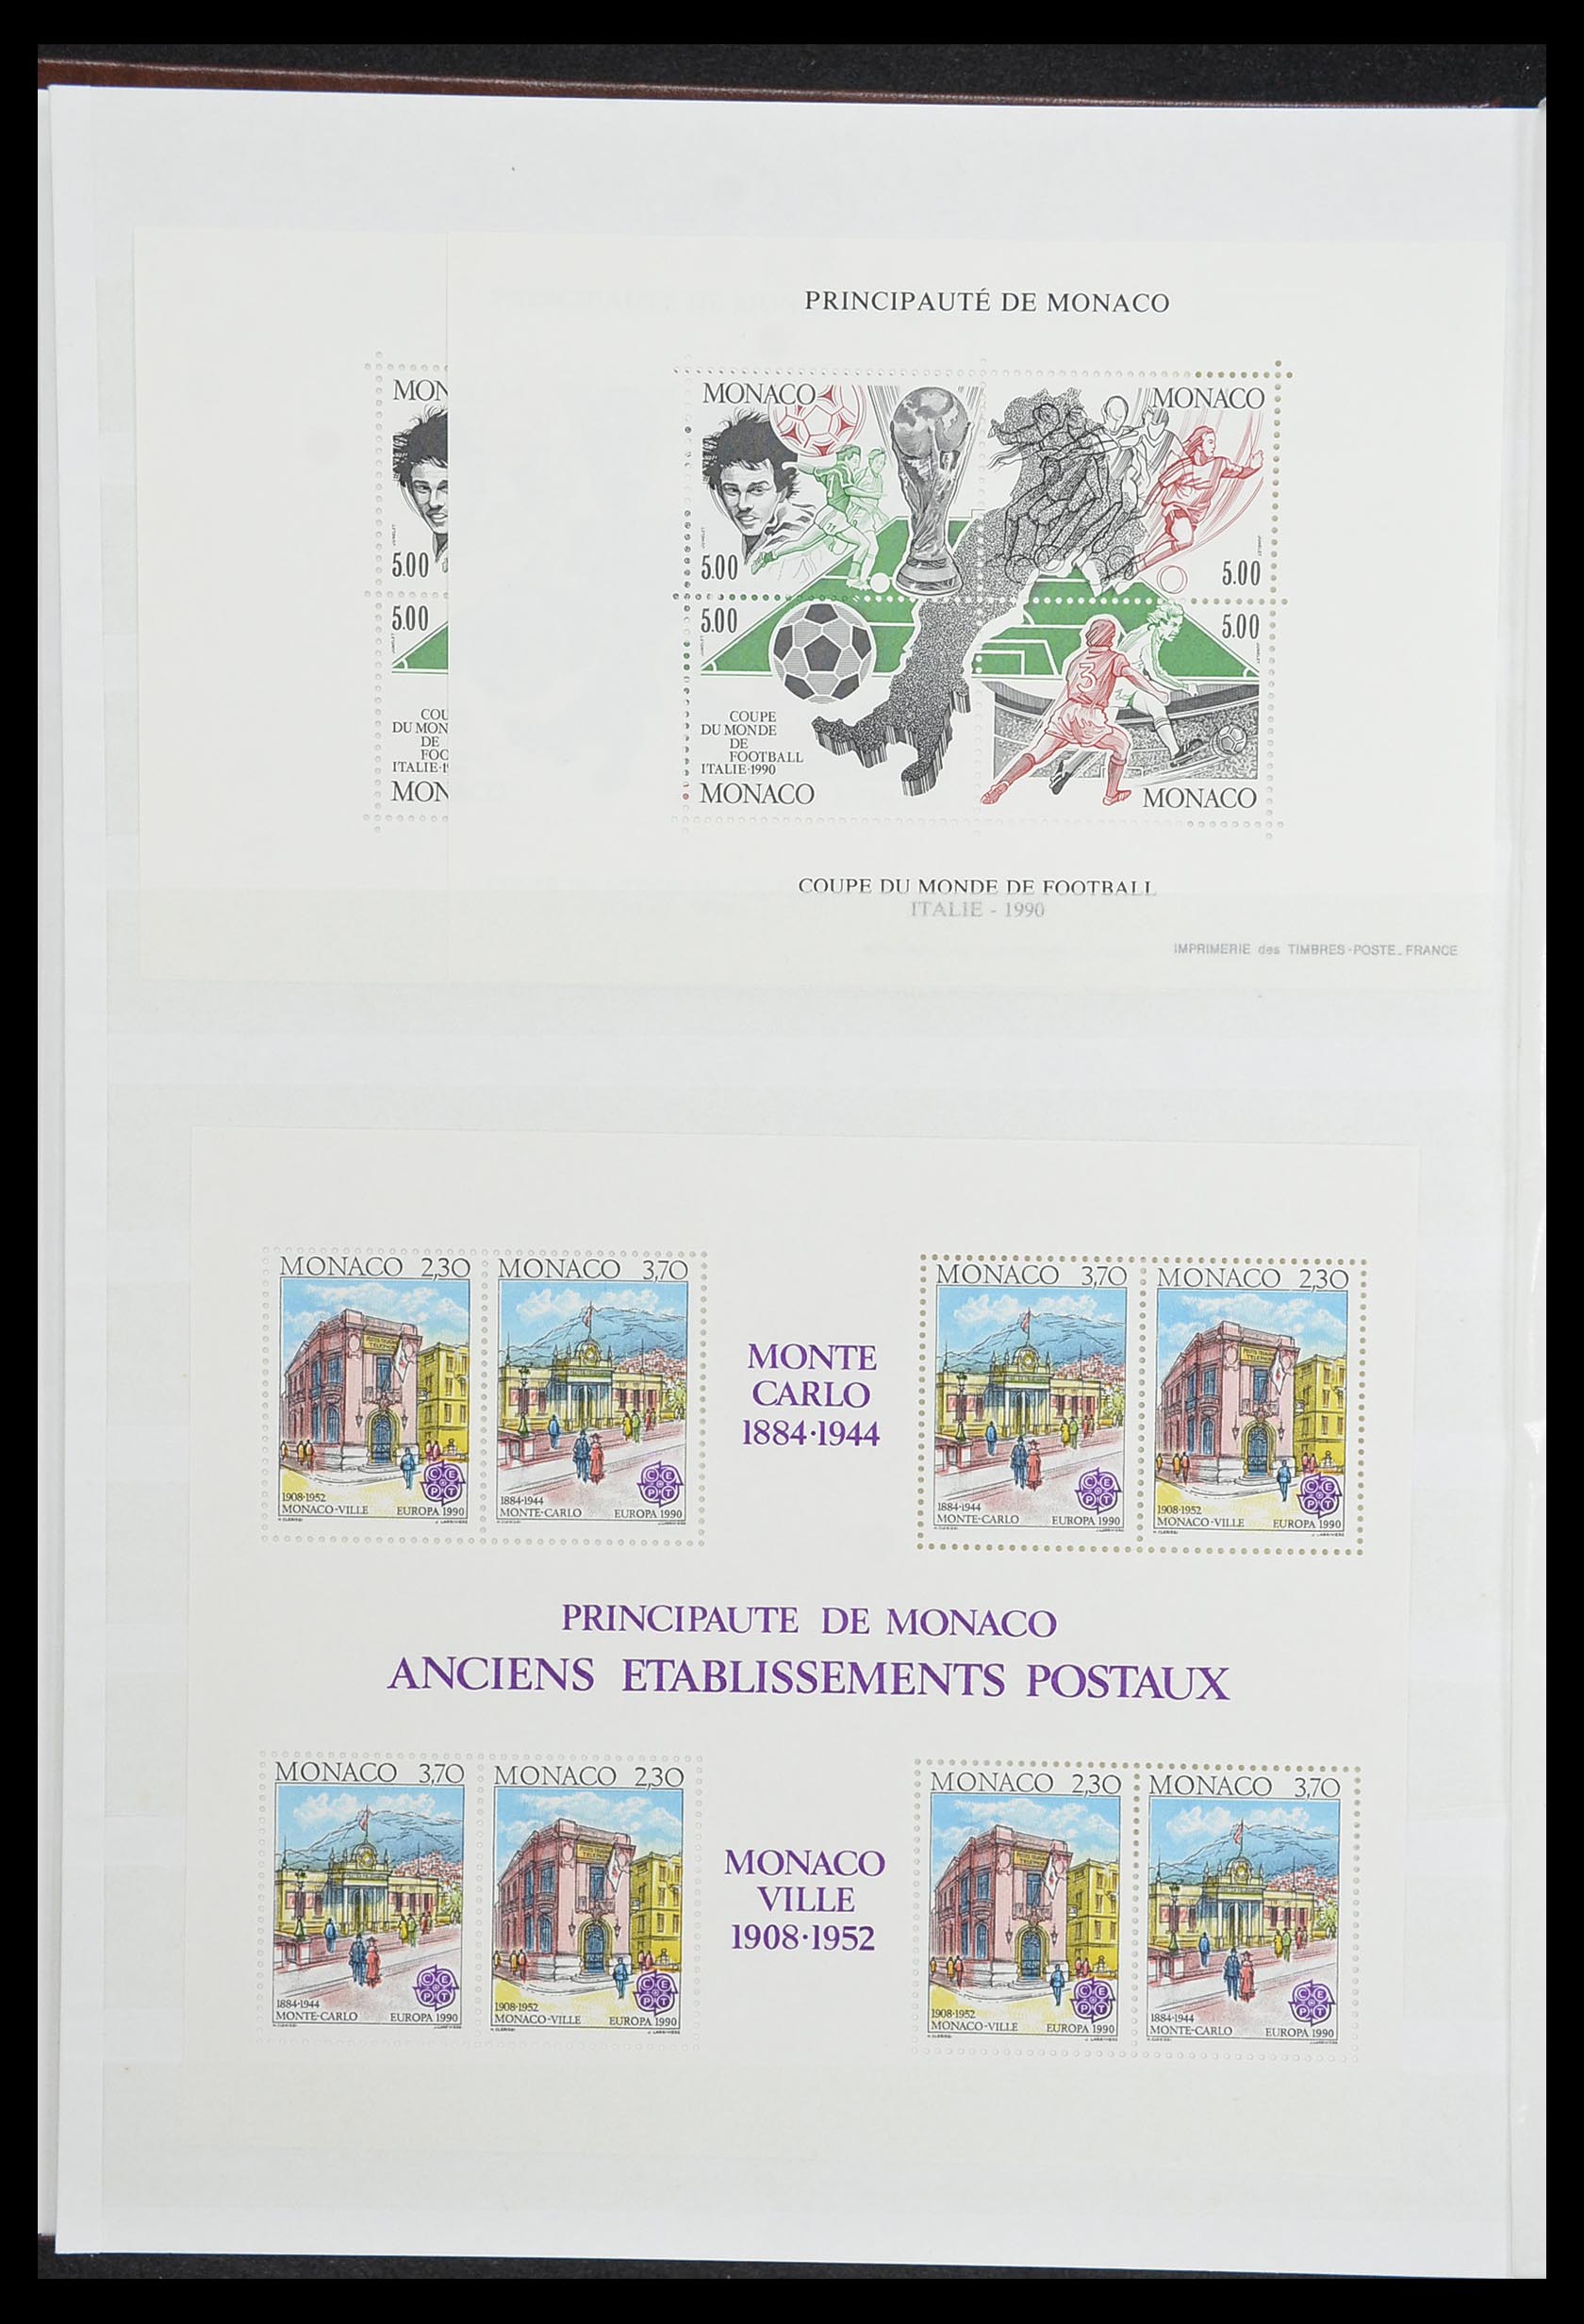 33833 012 - Stamp collection 33833 Monaco souvenir sheets 1979-2015.